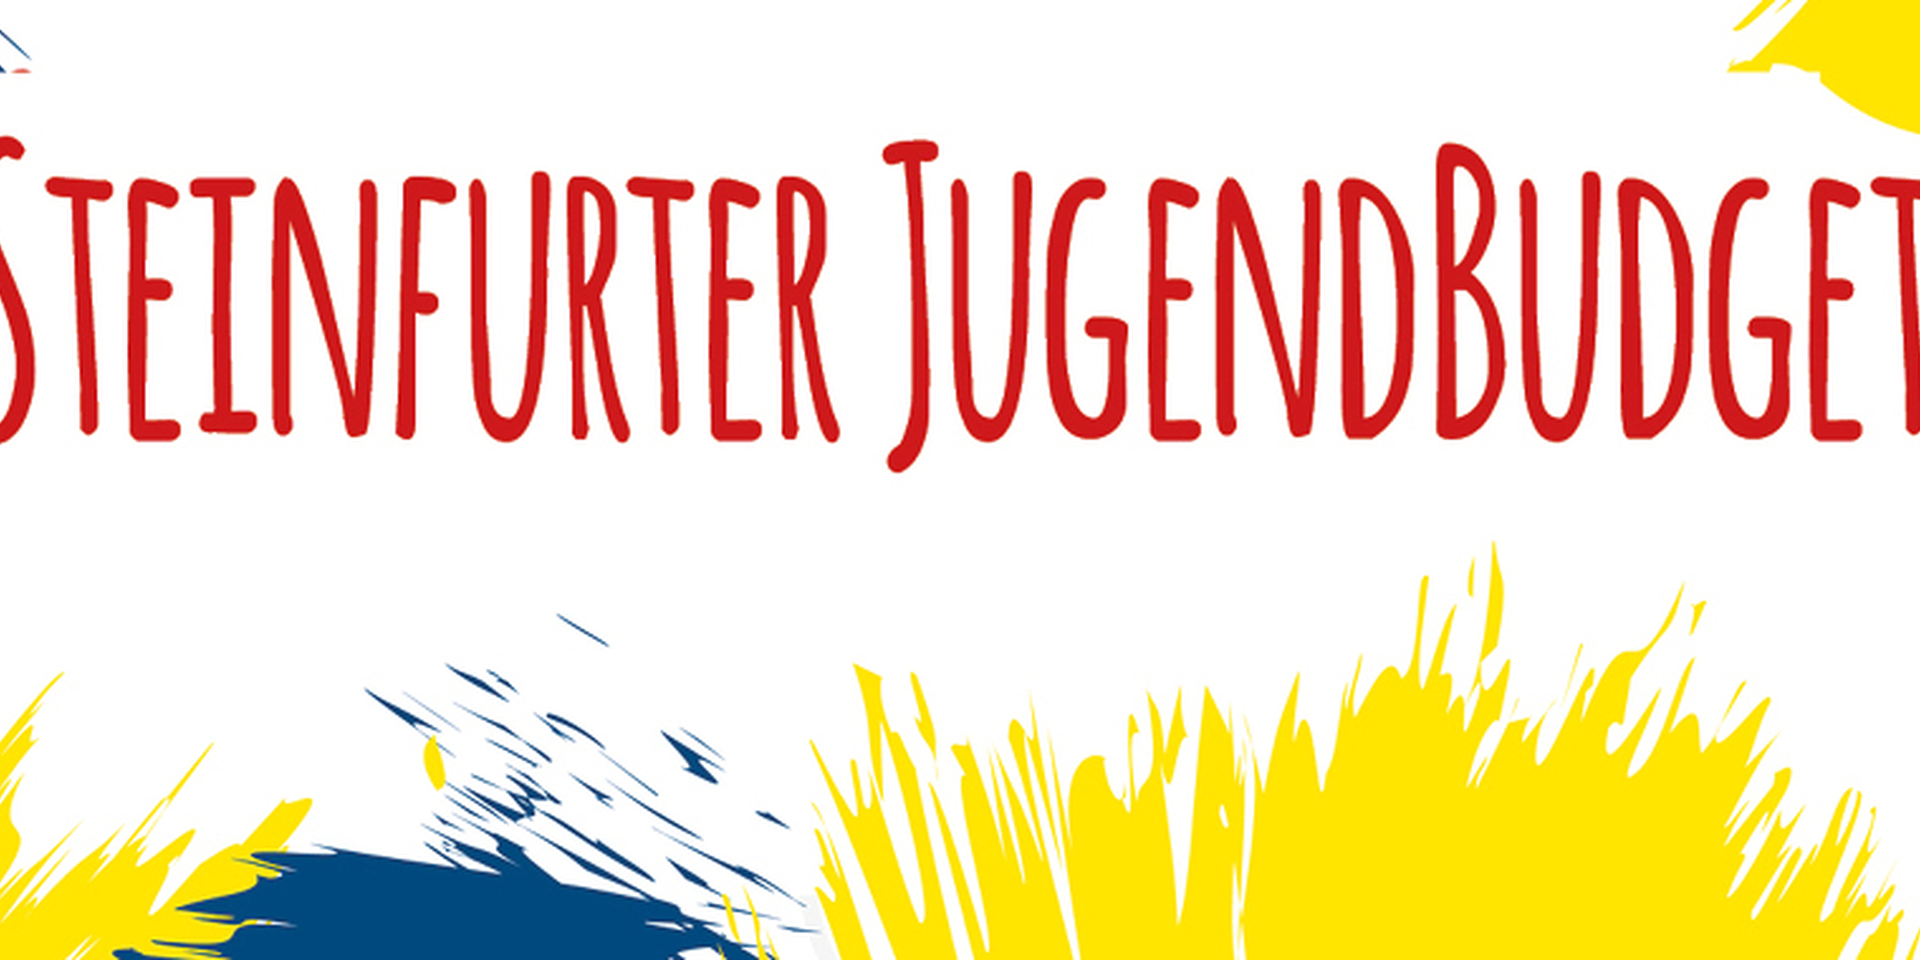 Das Steinfurter "JugendBudget"